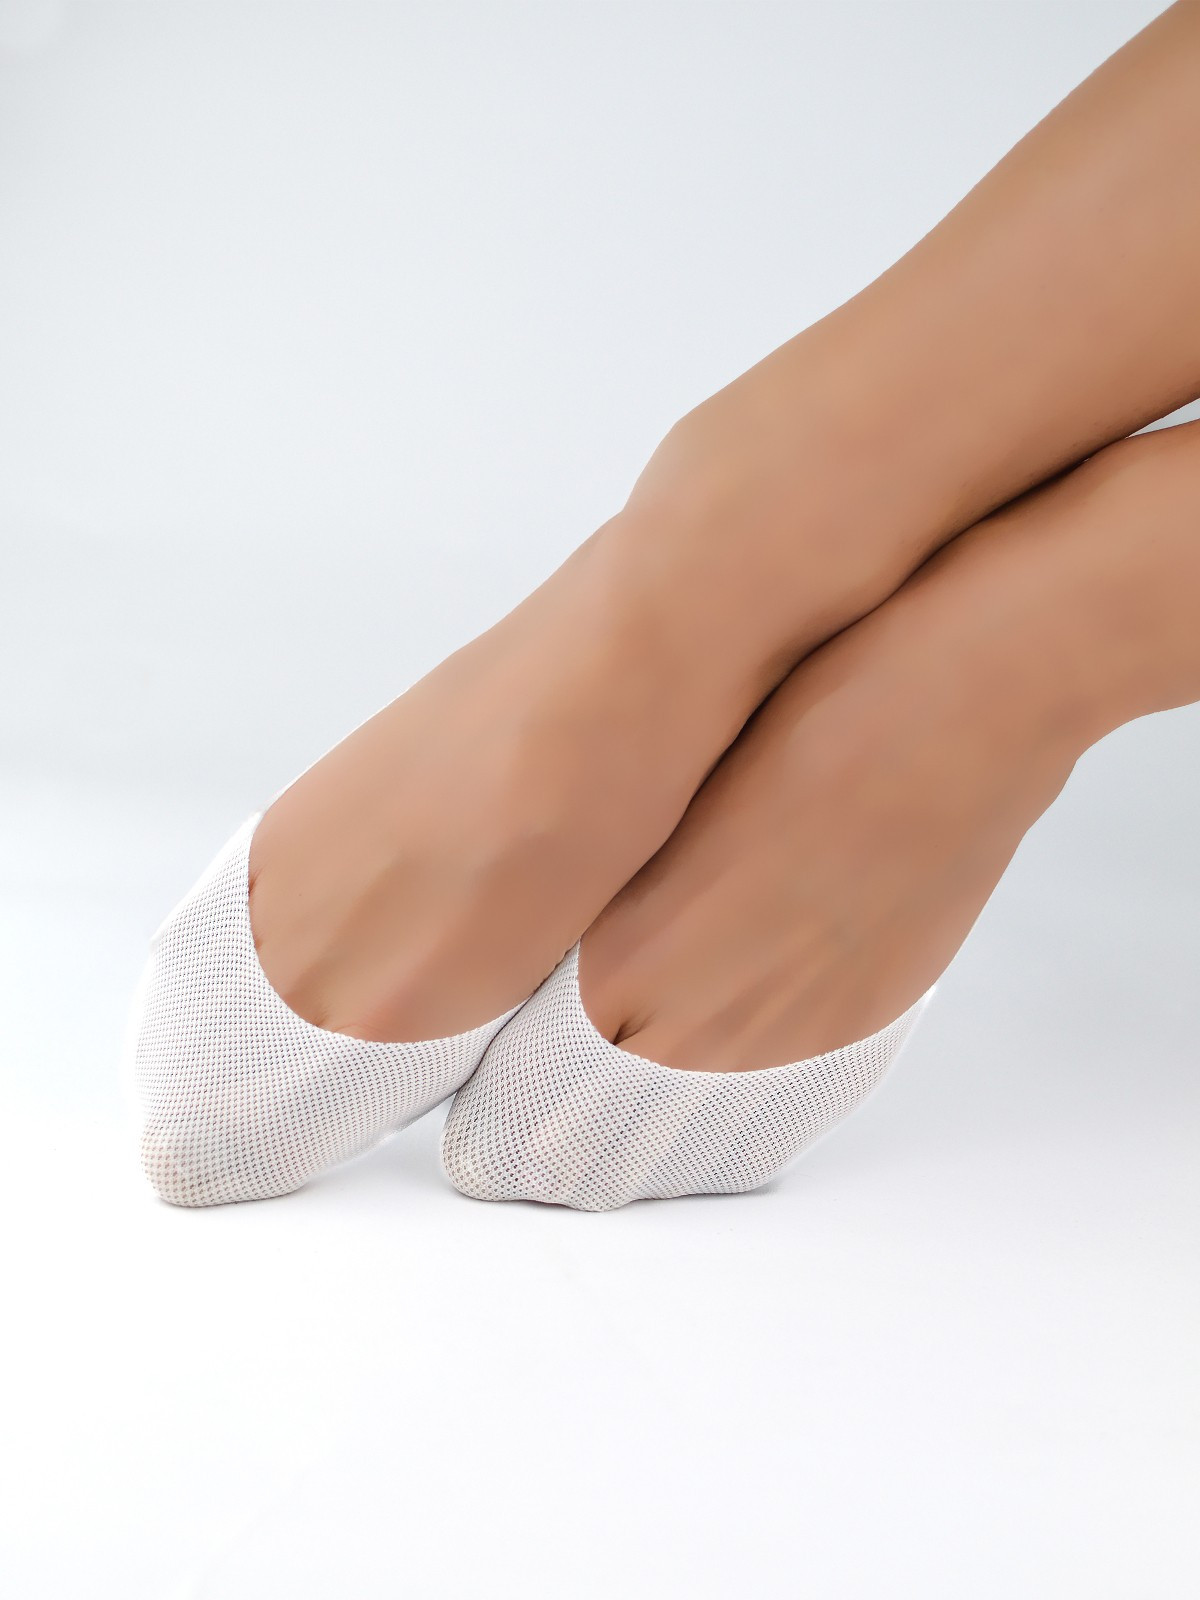 Dámské ponožky - baleríny Noviti SN022 Laserové, Silikon, ABS černá 36-41